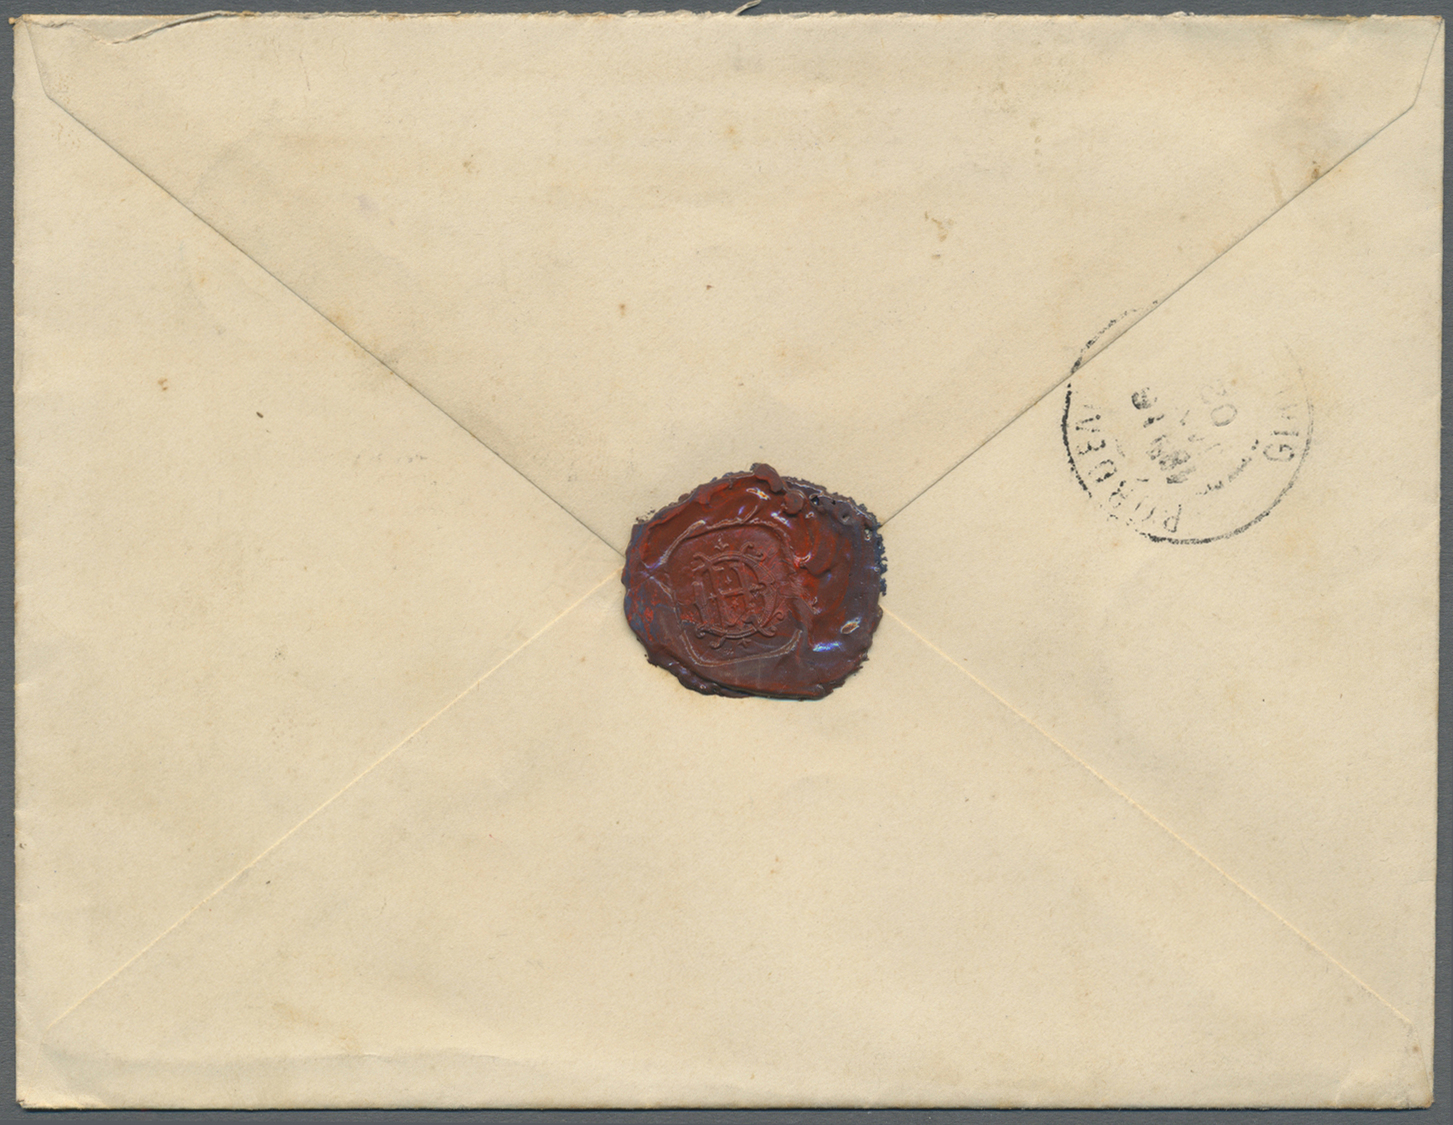 Br Haiti: 1902. Registered Envelope Addressed To France Bearing Yvert 47, 3c Blue, Yvert 51, 3c Green And Yvert 56, 8c C - Haiti